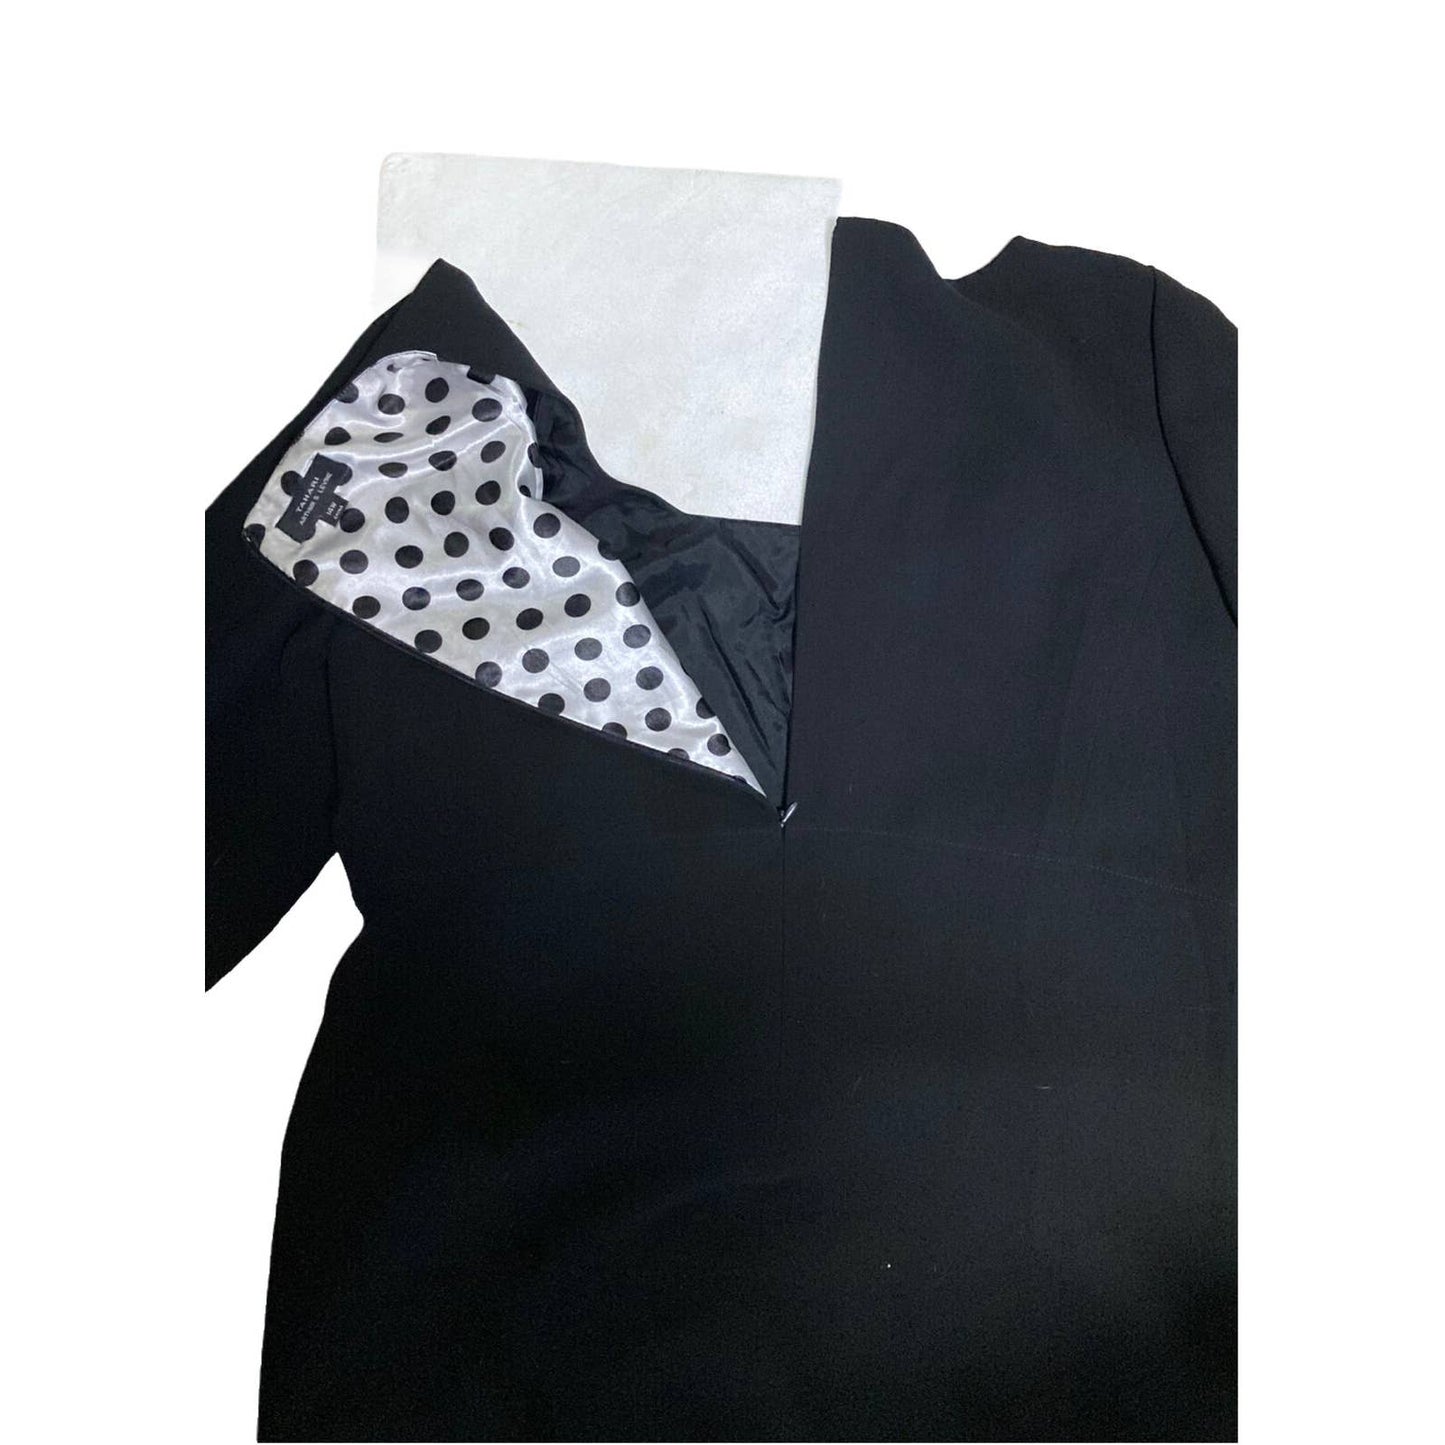 Tahari Arthur S Levine 3/4 Sleeves Black Lined Sheath Dress Size 14W Tahari Arthur